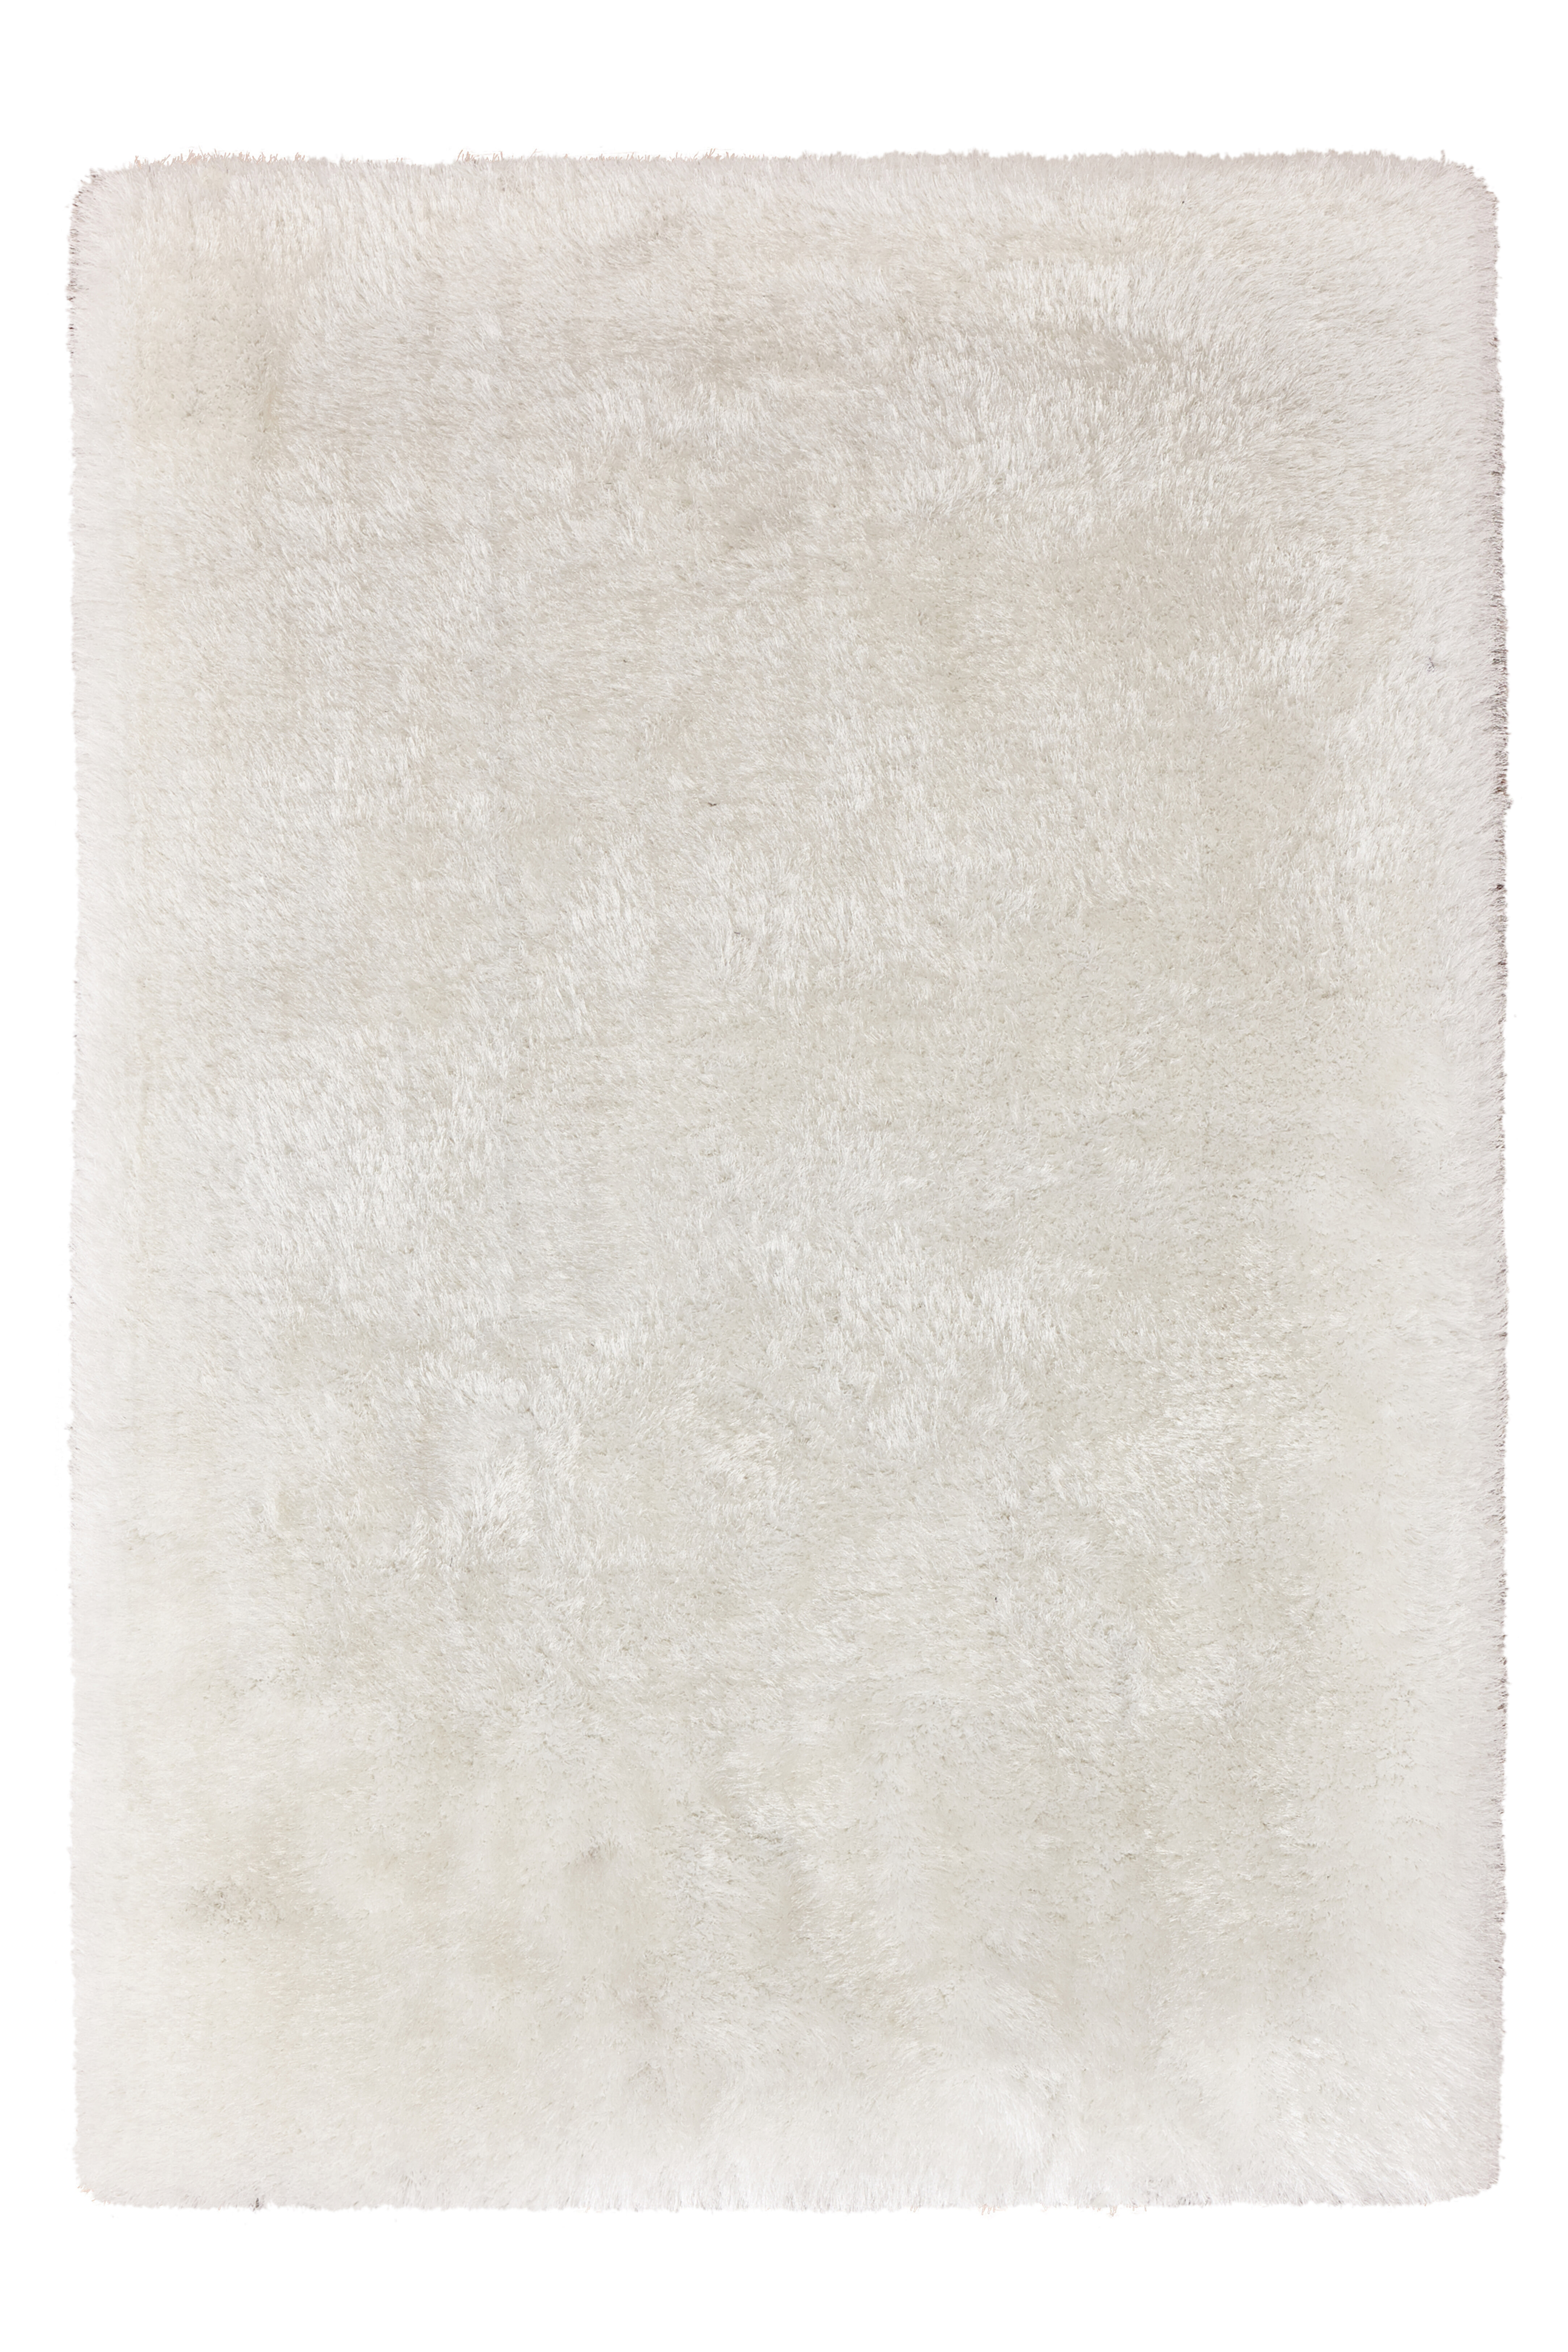 Kayoom Vloerkleed 'Cosy 310' kleur Wit, 80 x 150cm